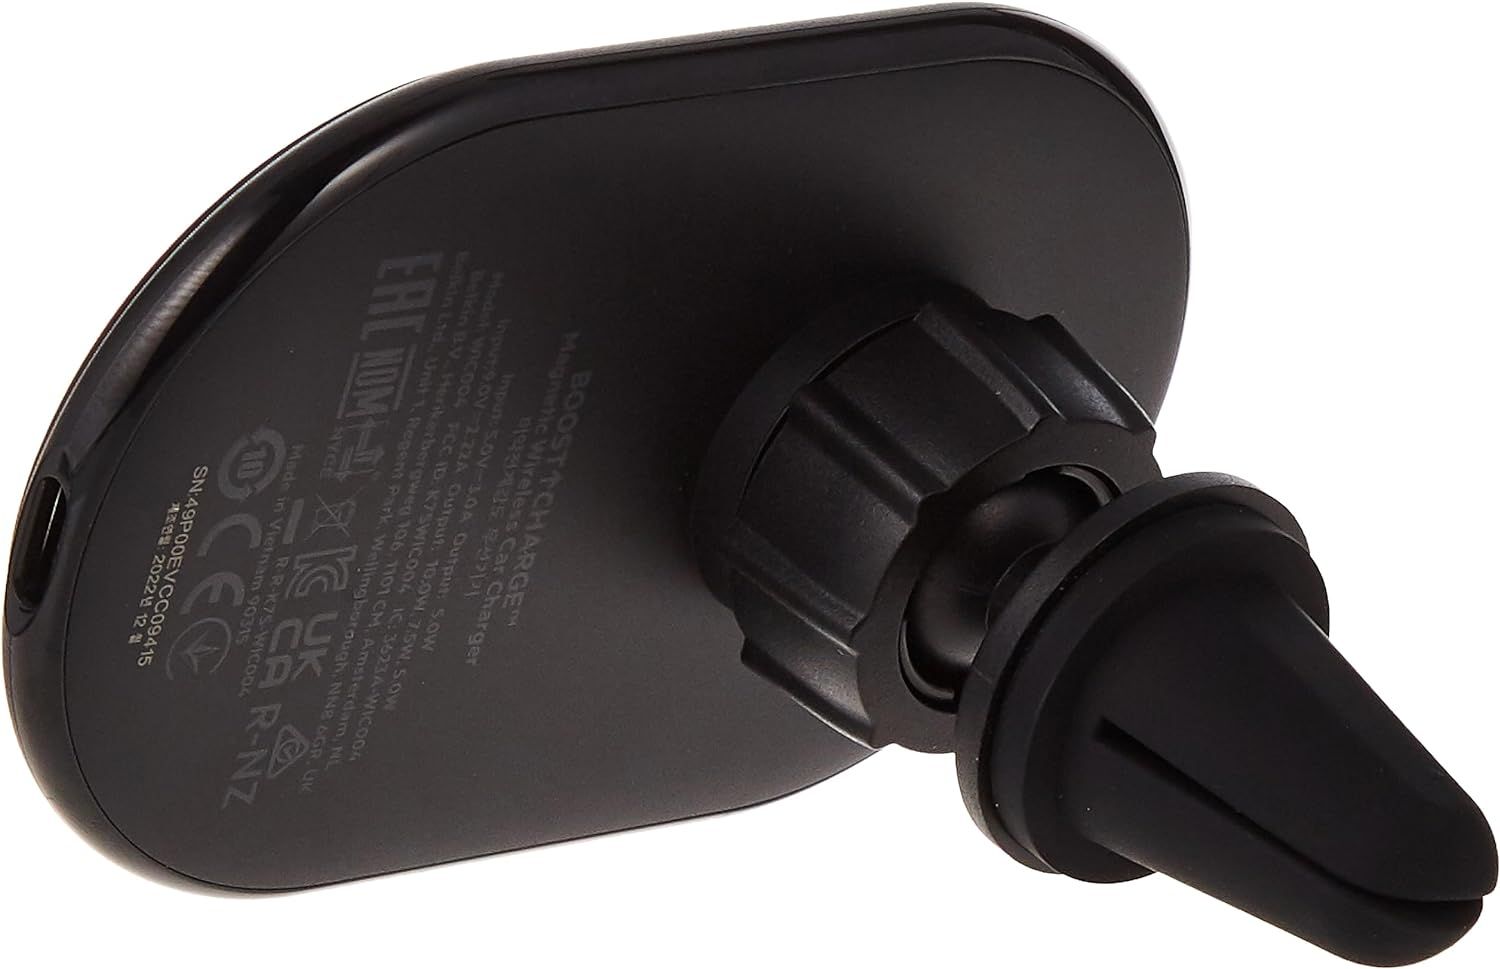 Belkin MagSafe Magnetic Car Phone Holder Black